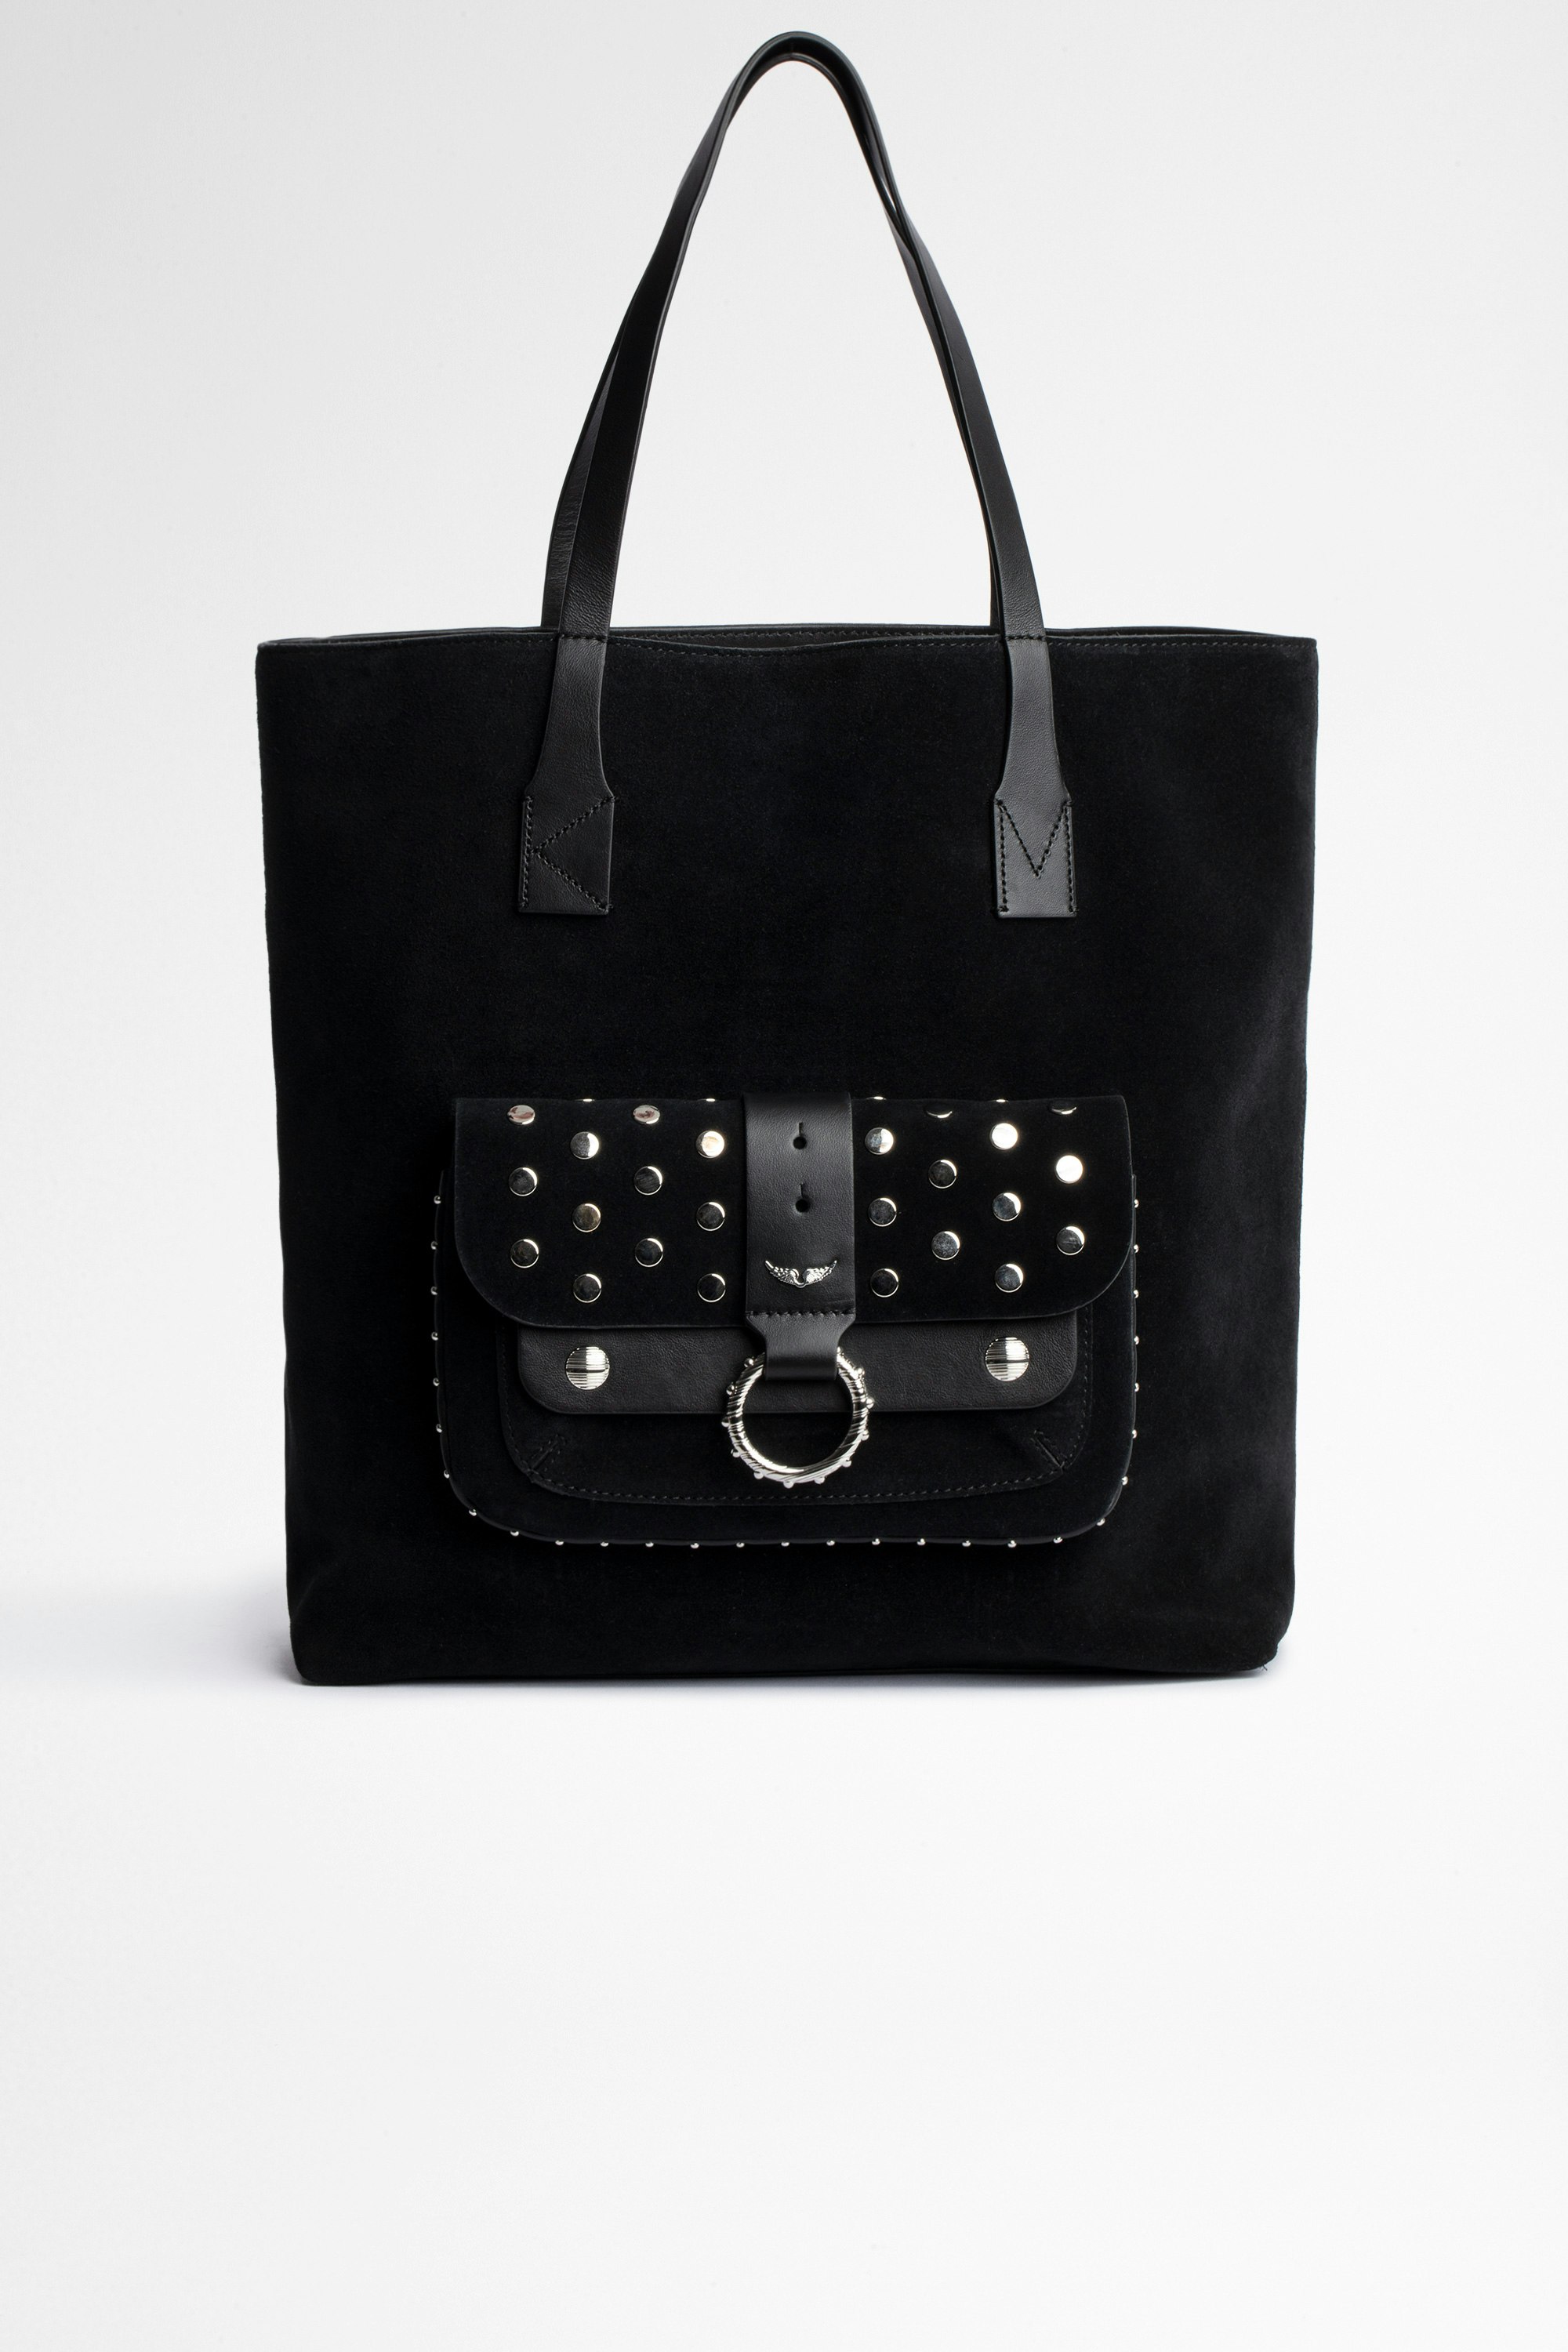 Sac Kate Shopper Sac shopping en cuir noir. En achetant ce produit, vous soutenez un production de cuir responsable à travers le Leather Working Group